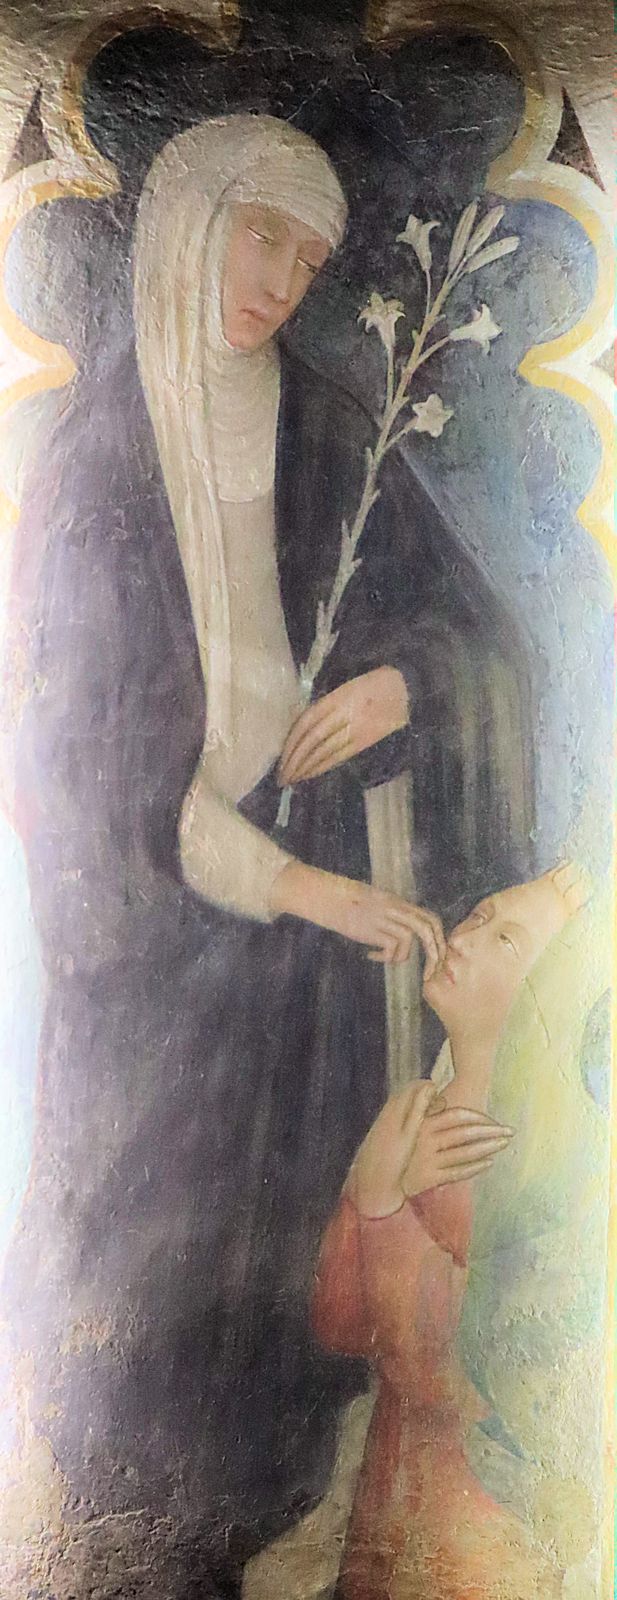 Andrea Vanni, der zu Katharinas Freundes- und Schülerkreis gehörte: Fresko in der Basilika S. Domenico in Siena, um 1375, also noch zu ihren Lebzeiten entstanden